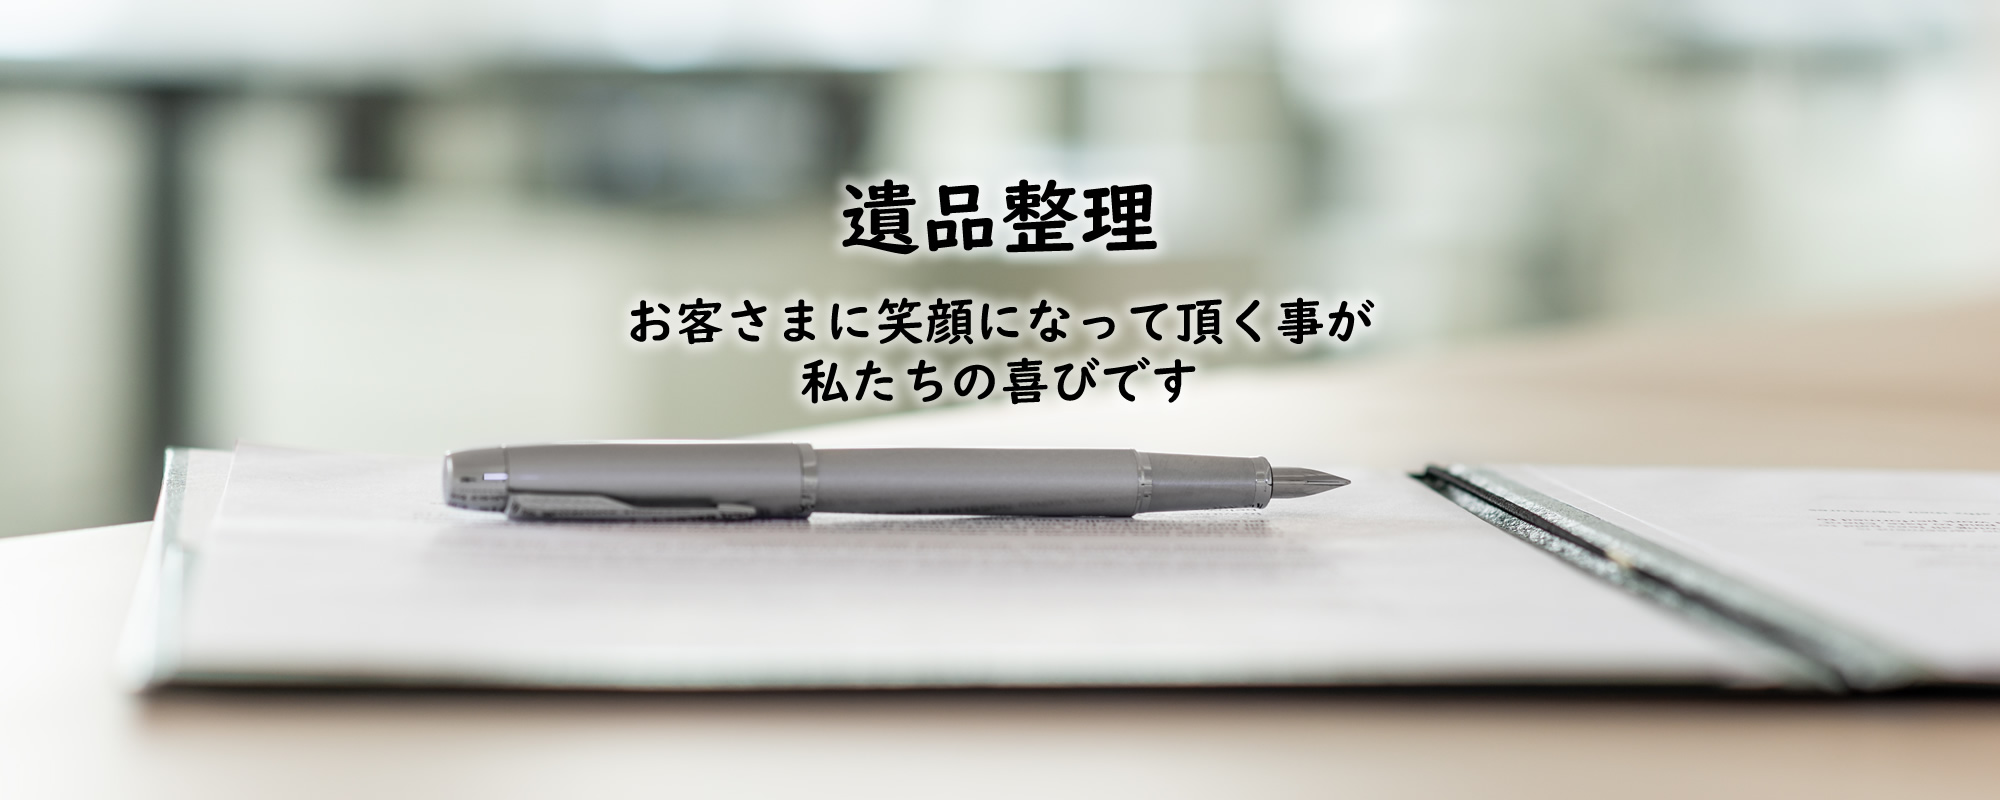 神奈川県厚木市の遺品整理なら片づけコーナン株式会社 港南サービスメイン画像3